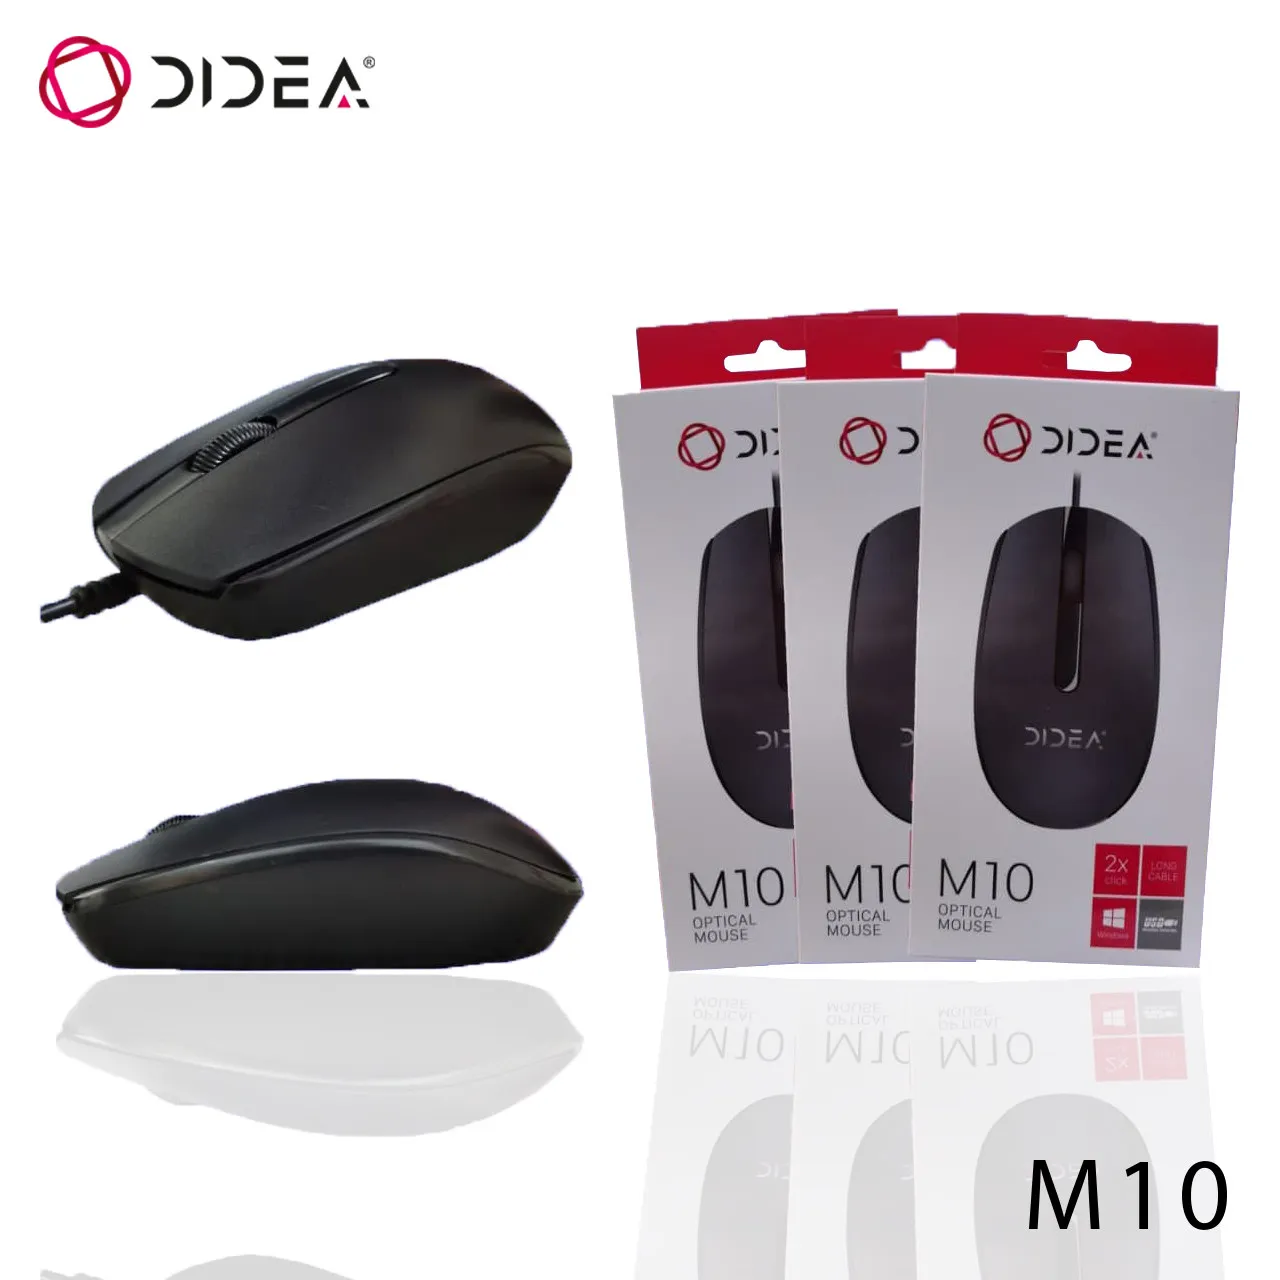 Компьютерная мышь Didea M10#1